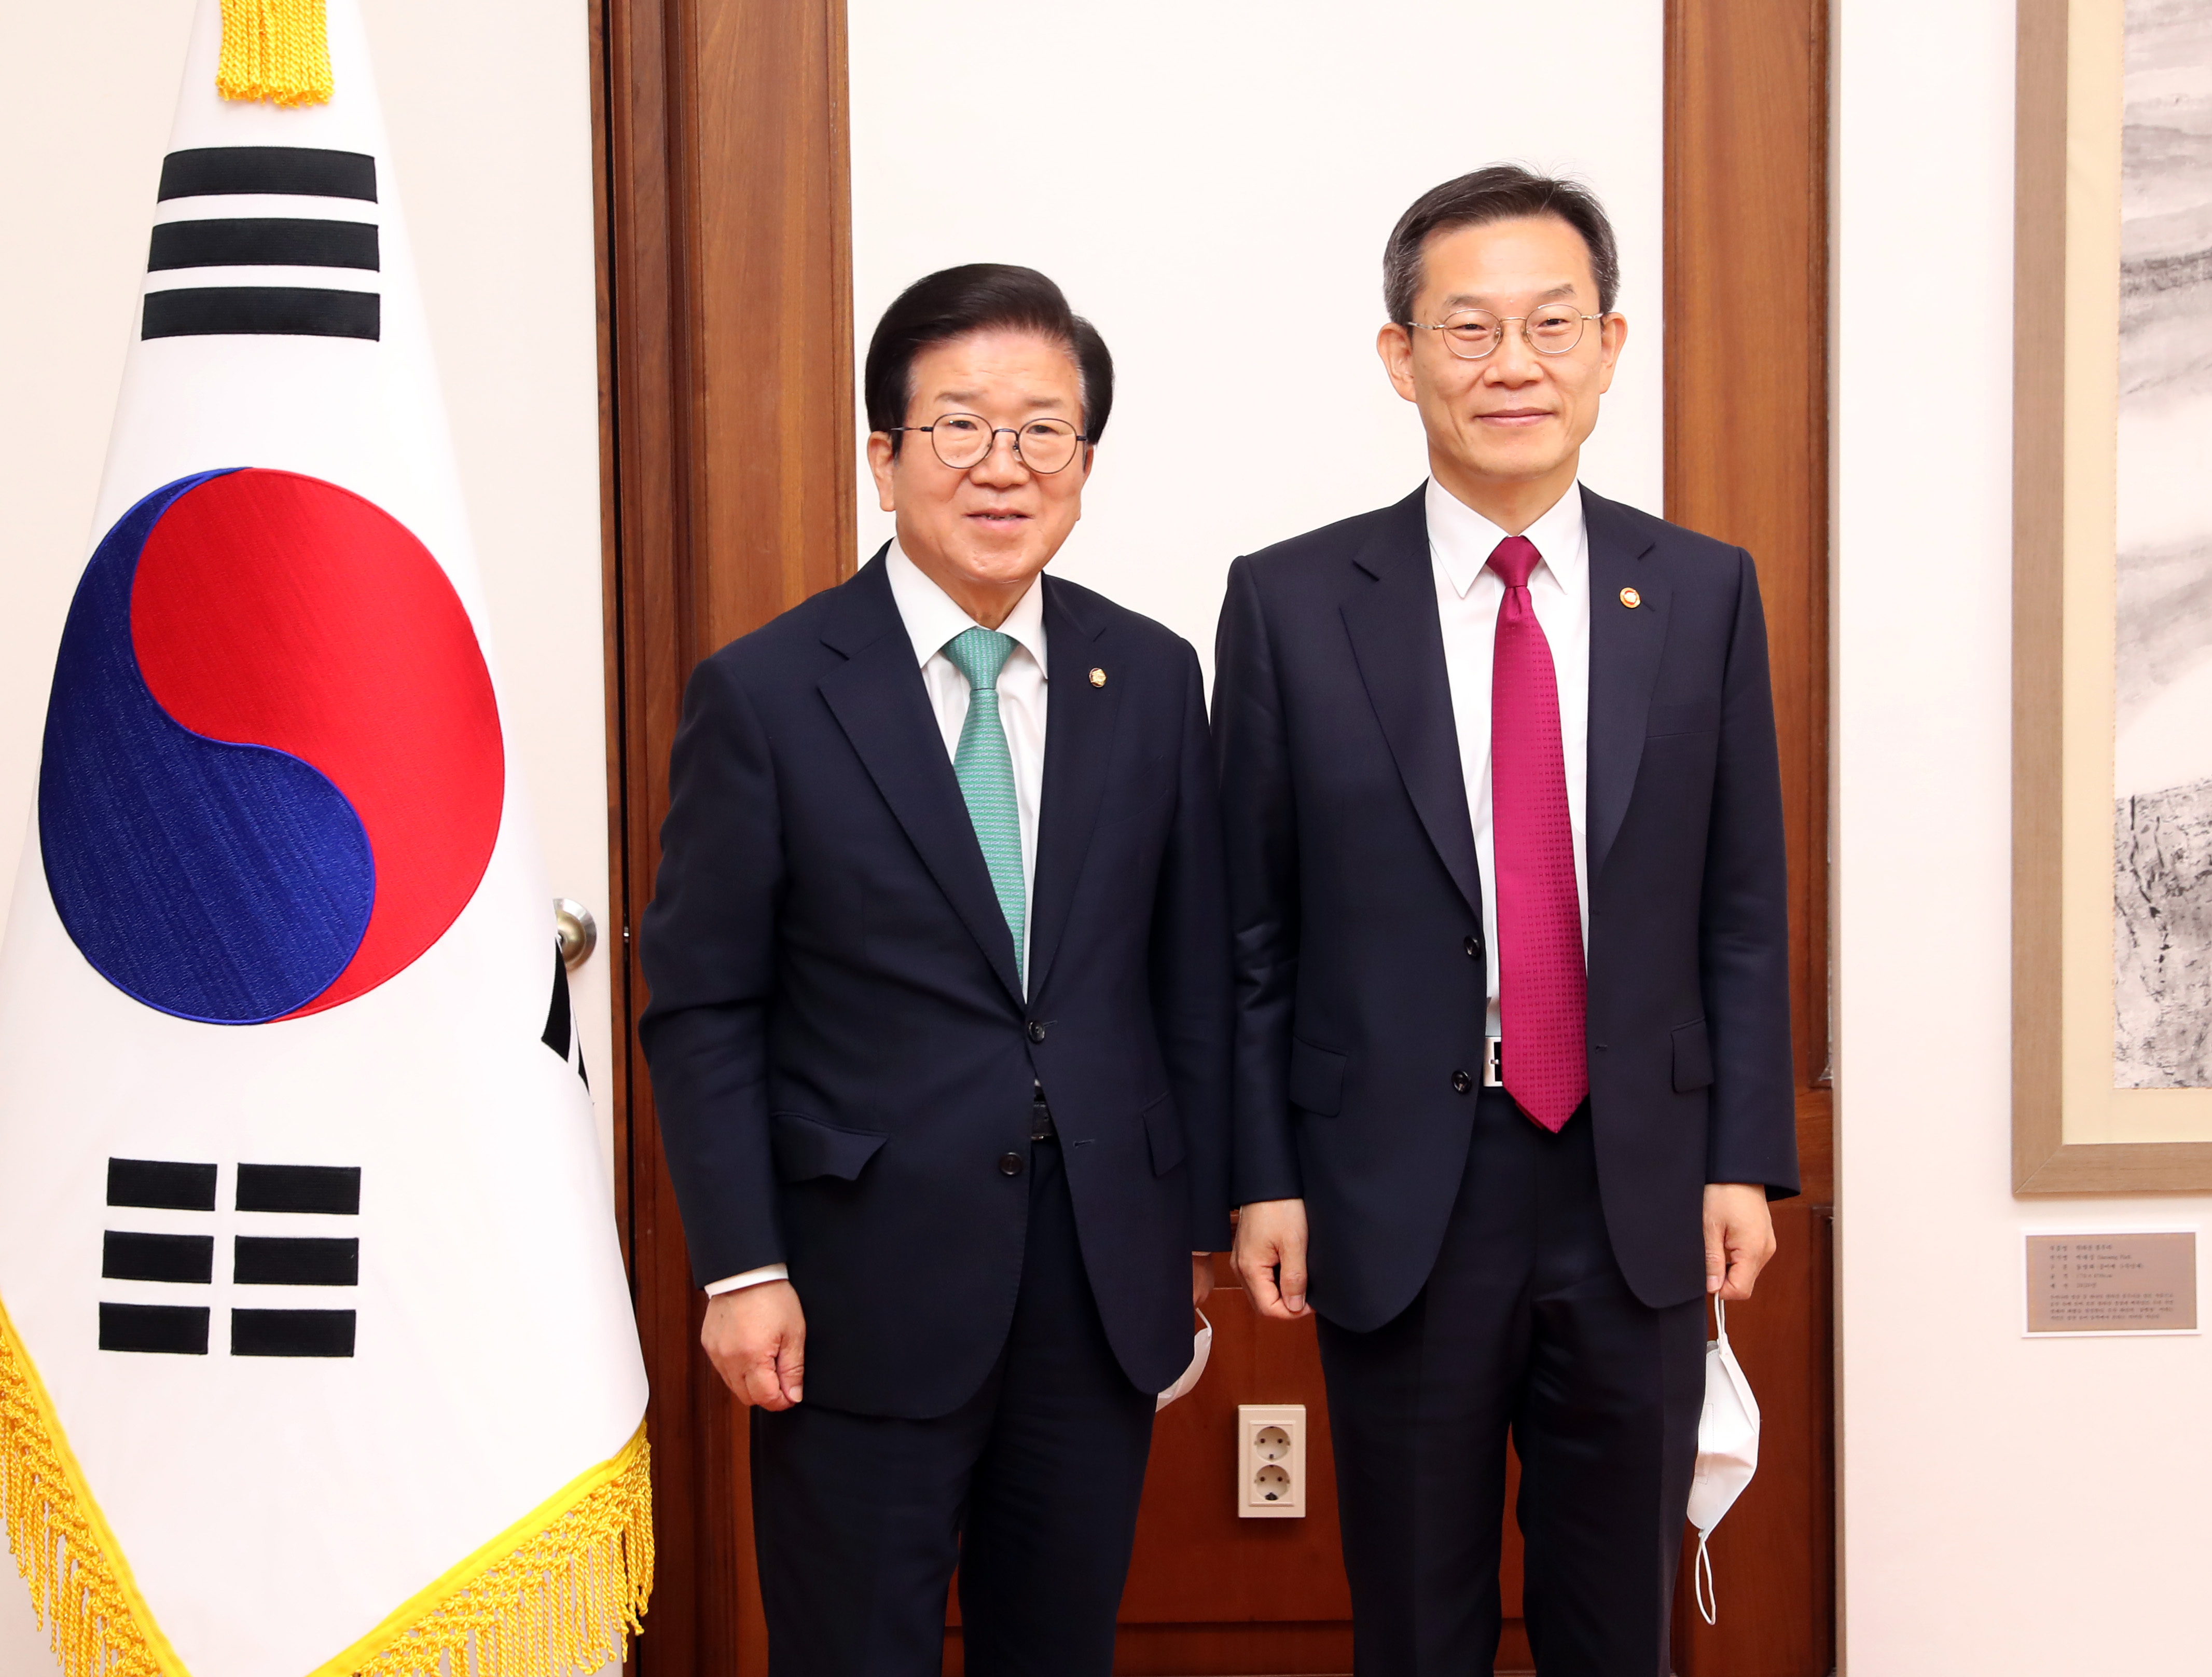 박병석 국회의장, 이종호 신임 과학기술정보통신부 장관 예방 받아1.JPG